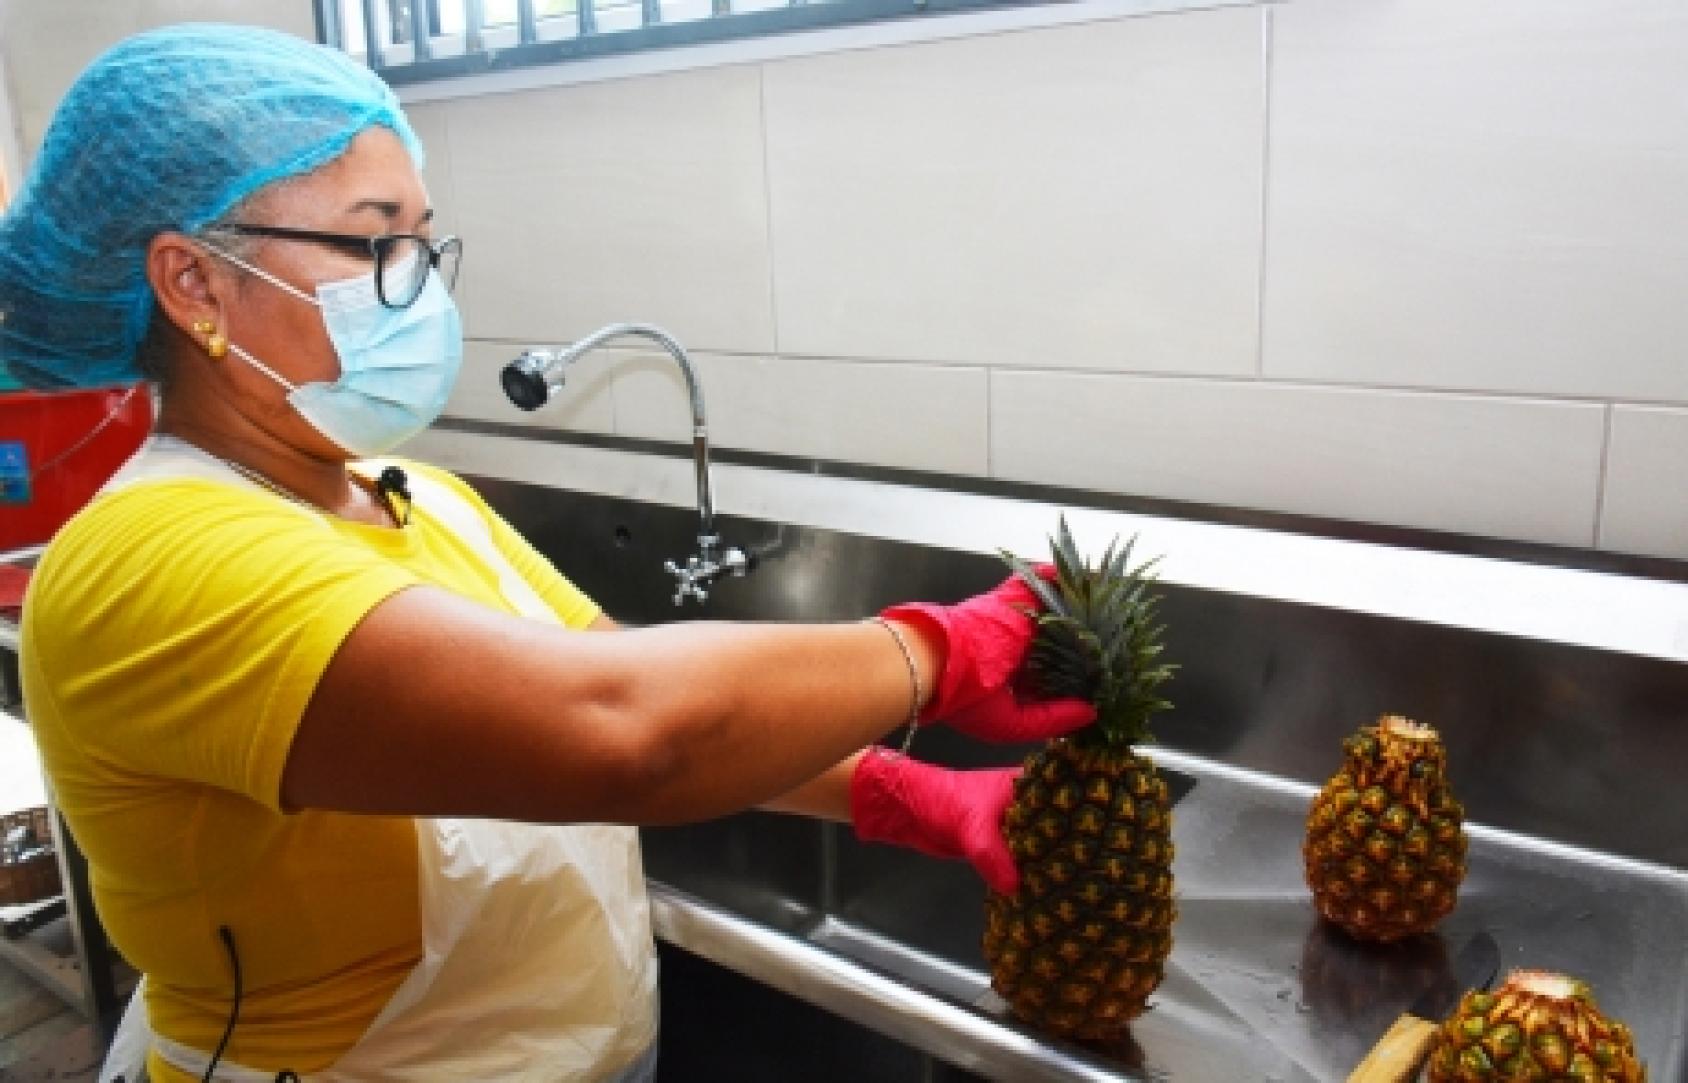 Une femme portant un masque de protection respiratoire, des gants, une charlotte et une blouse jaune, nettoie un ananas dans un évier industriel.